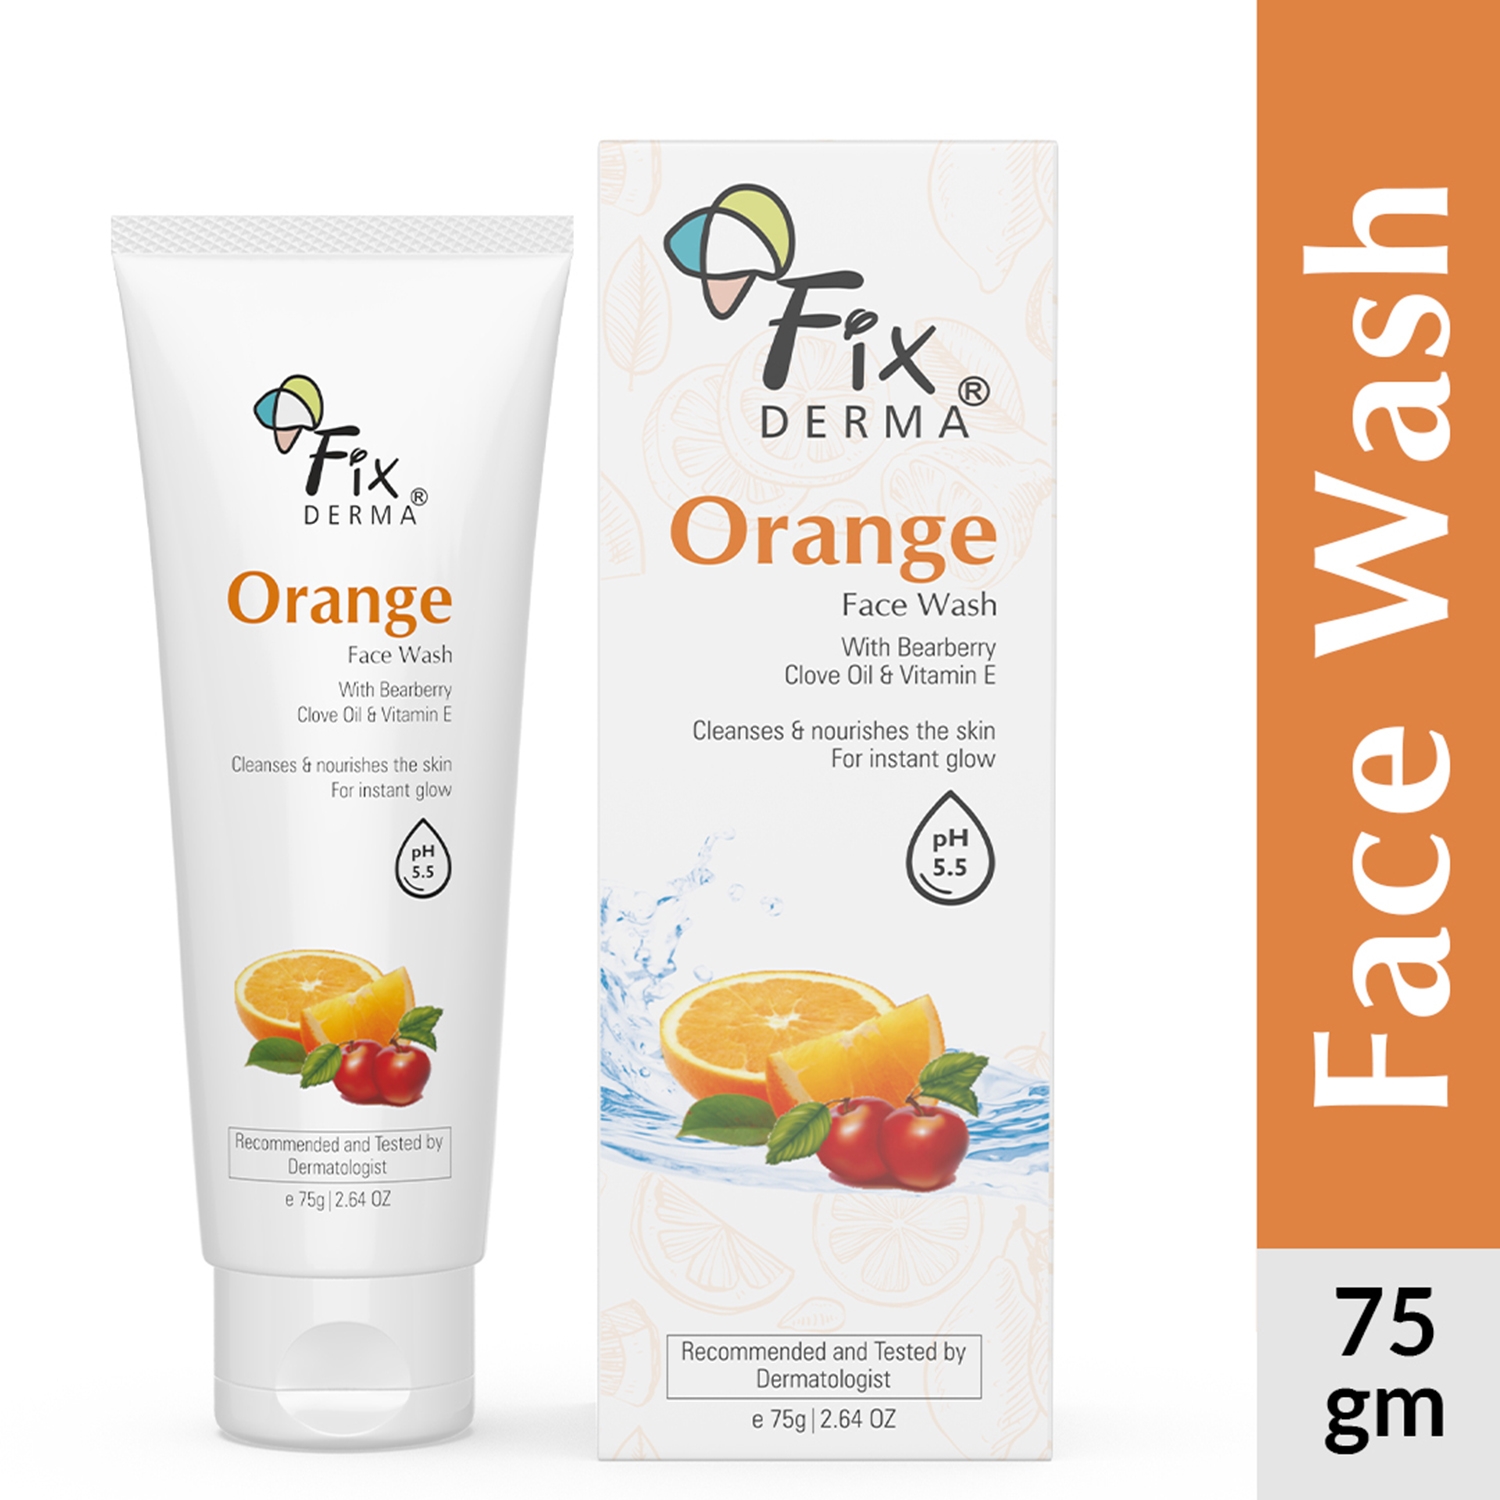 Fixderma | Fixderma Orange Facewash with Vitamin E & Bearberry for Tan Removal (75g)